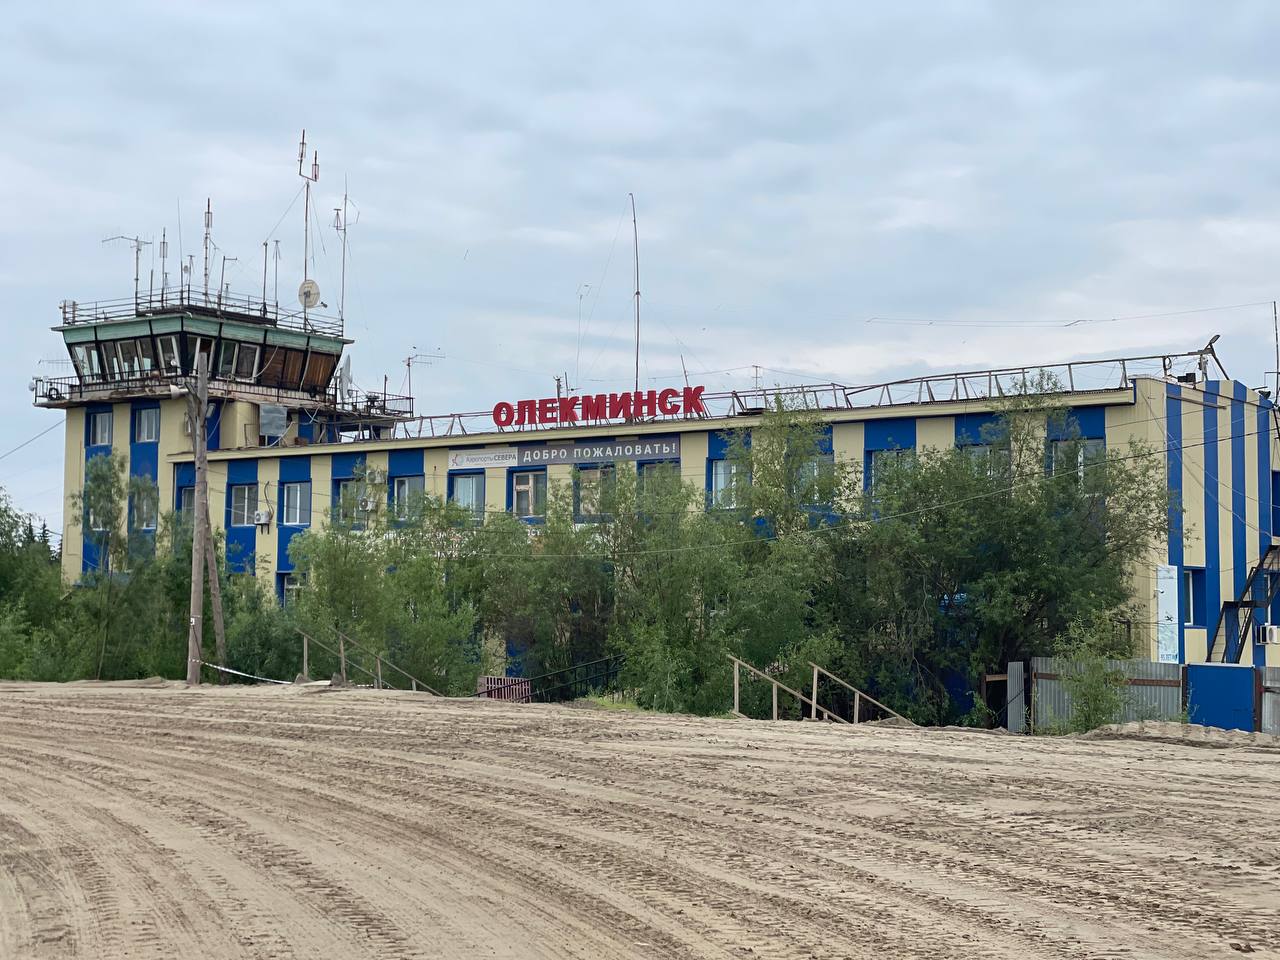 Строительство аэропорта продолжится в якутском Олекминске - Информационный портал Yk24/Як24